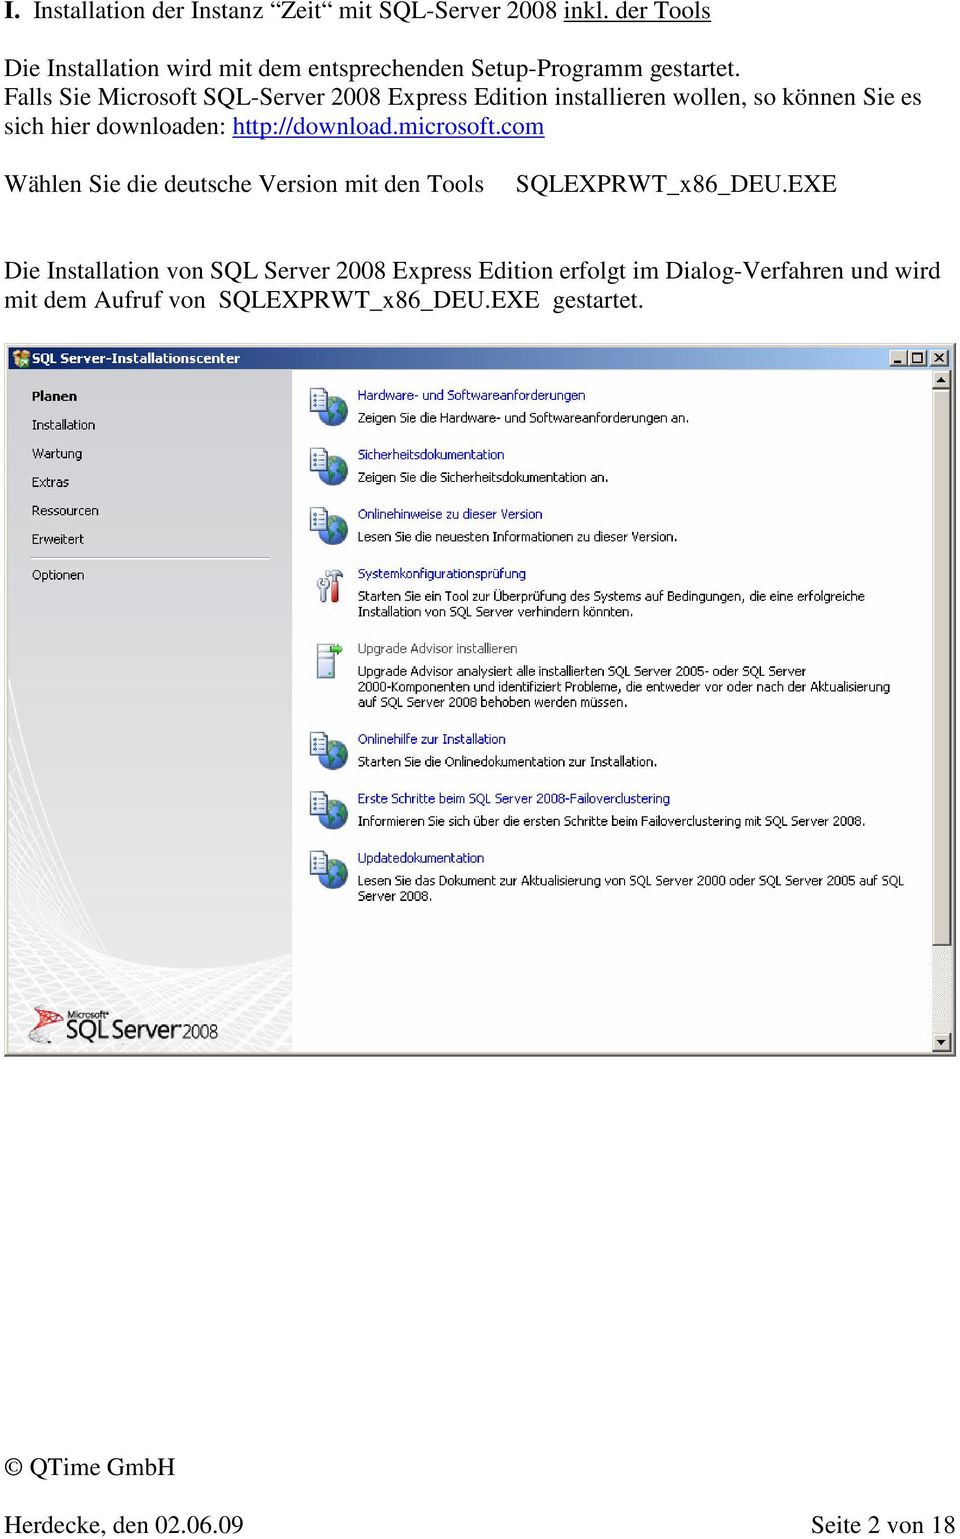 Falls Sie Microsoft SQL-Server 2008 Express Edition installieren wollen, so können Sie es sich hier downloaden: http://download.